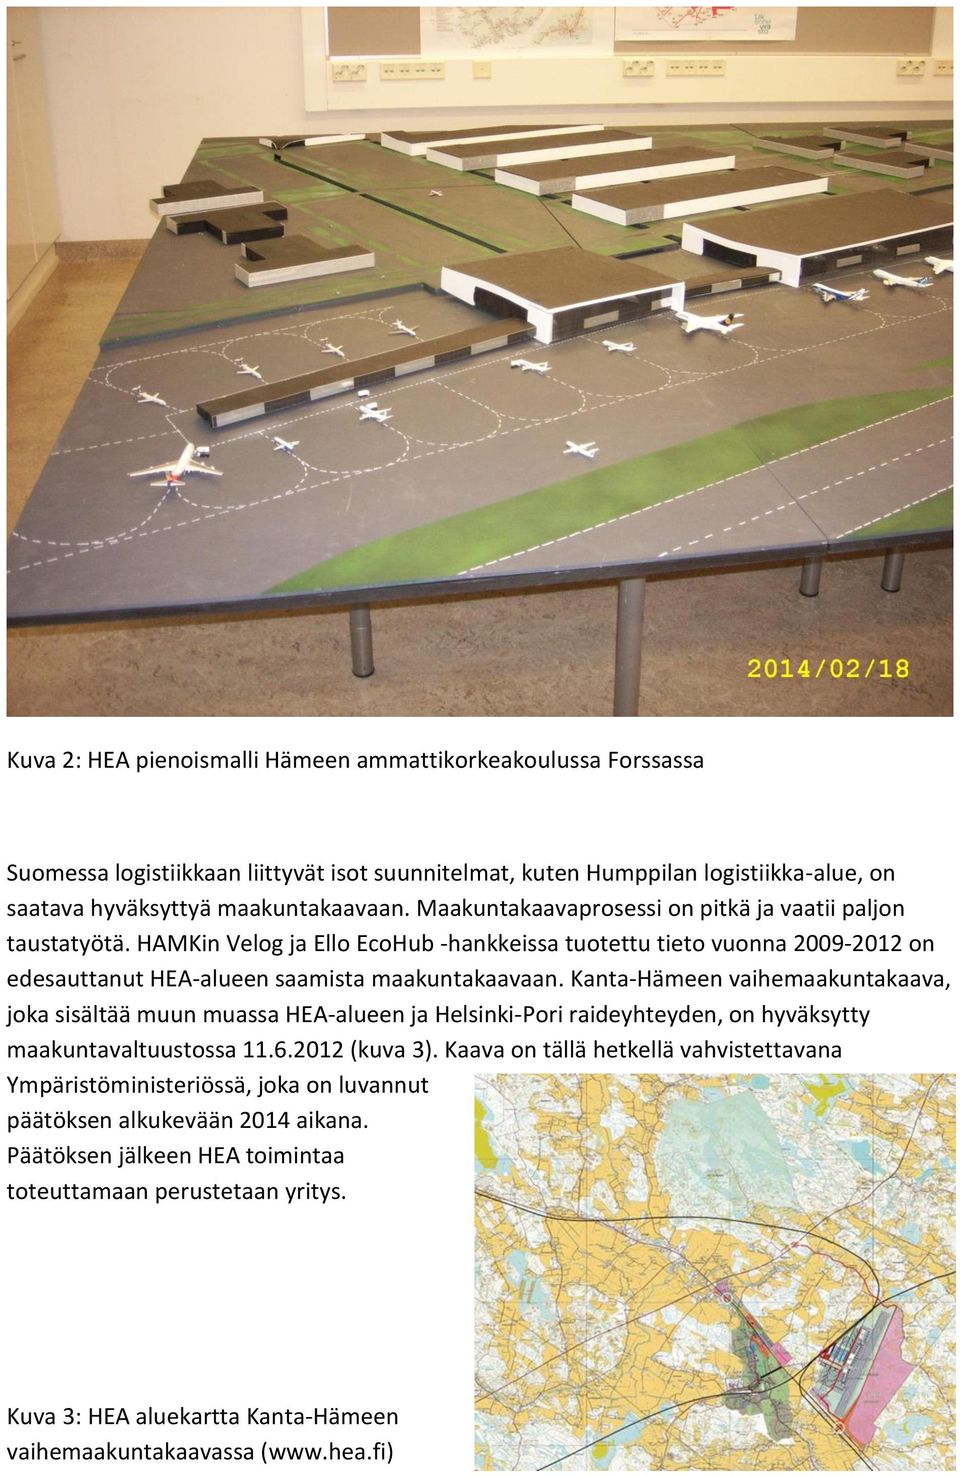 Kanta-Hämeen vaihemaakuntakaava, joka sisältää muun muassa HEA-alueen ja Helsinki-Pori raideyhteyden, on hyväksytty maakuntavaltuustossa 11.6.2012 (kuva 3).